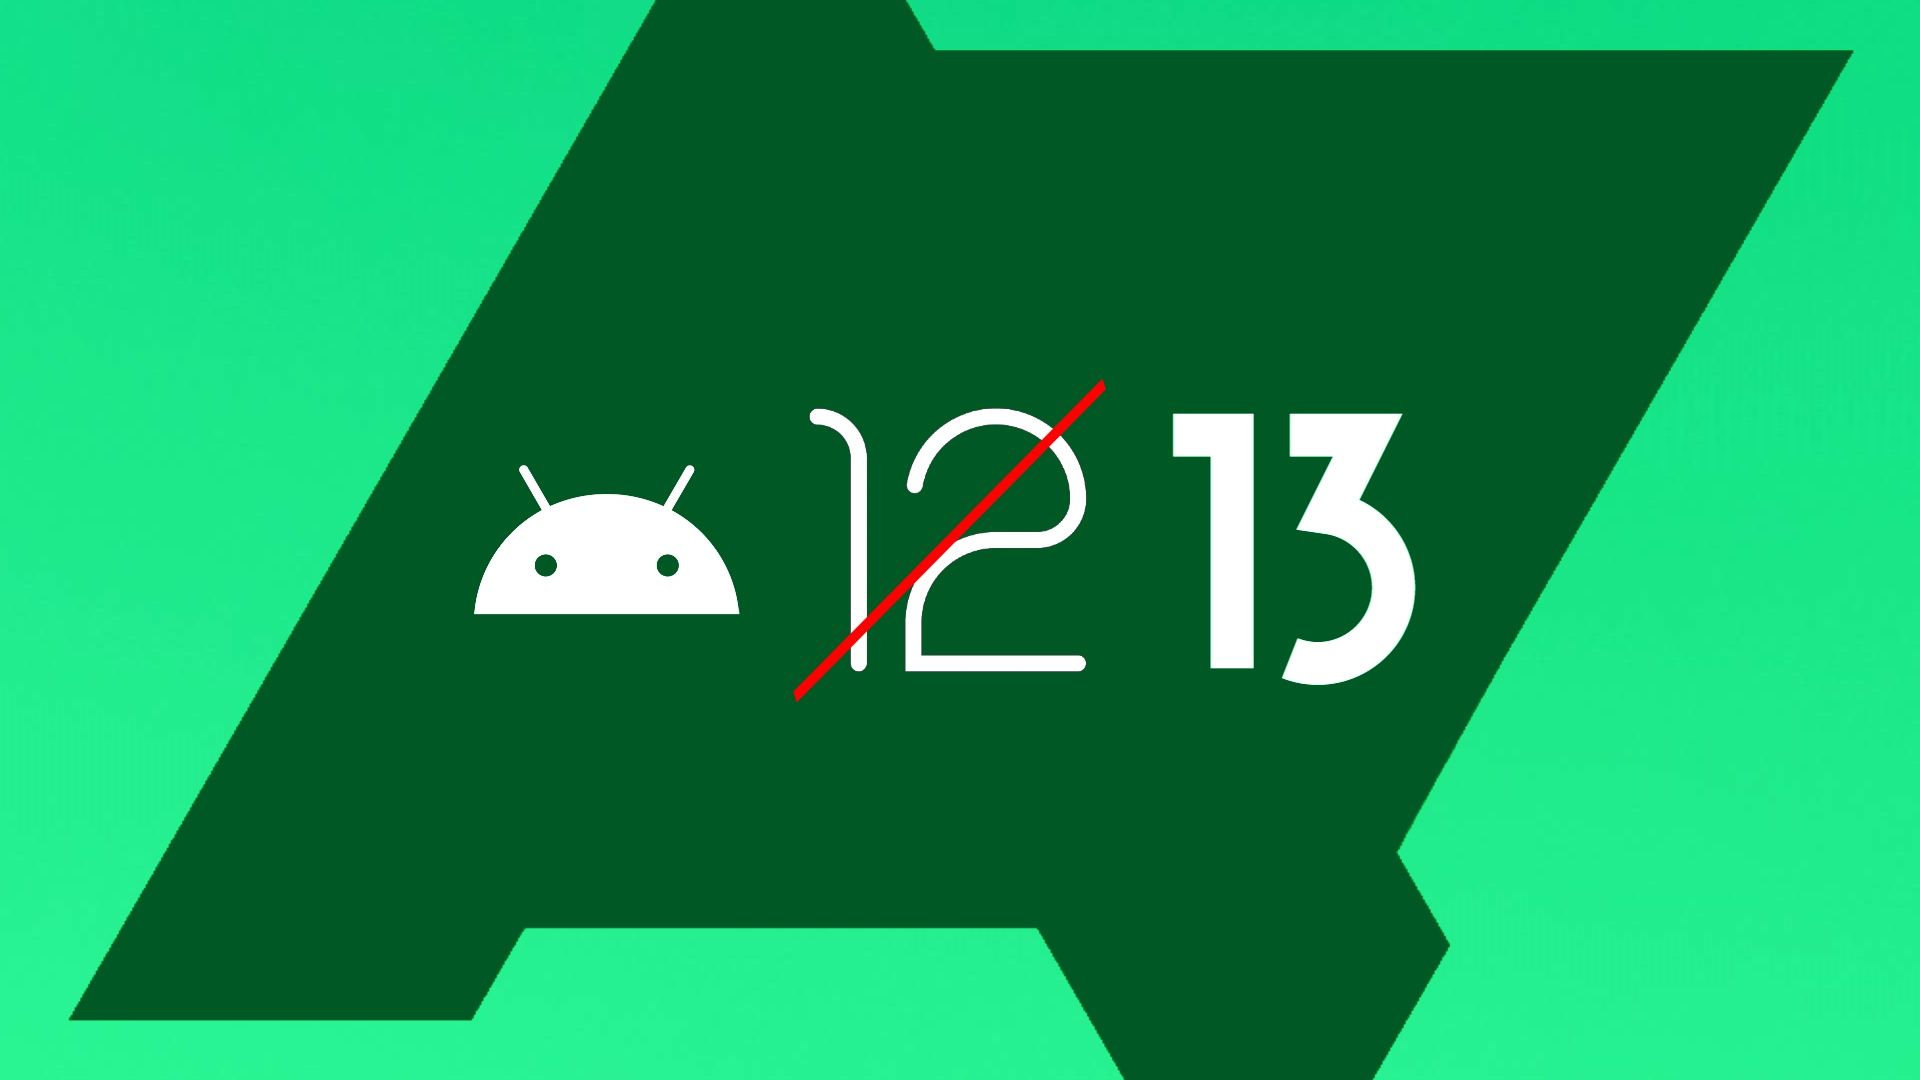 O logotipo do Android mostrando a mudança do Android 12 para o Android 13